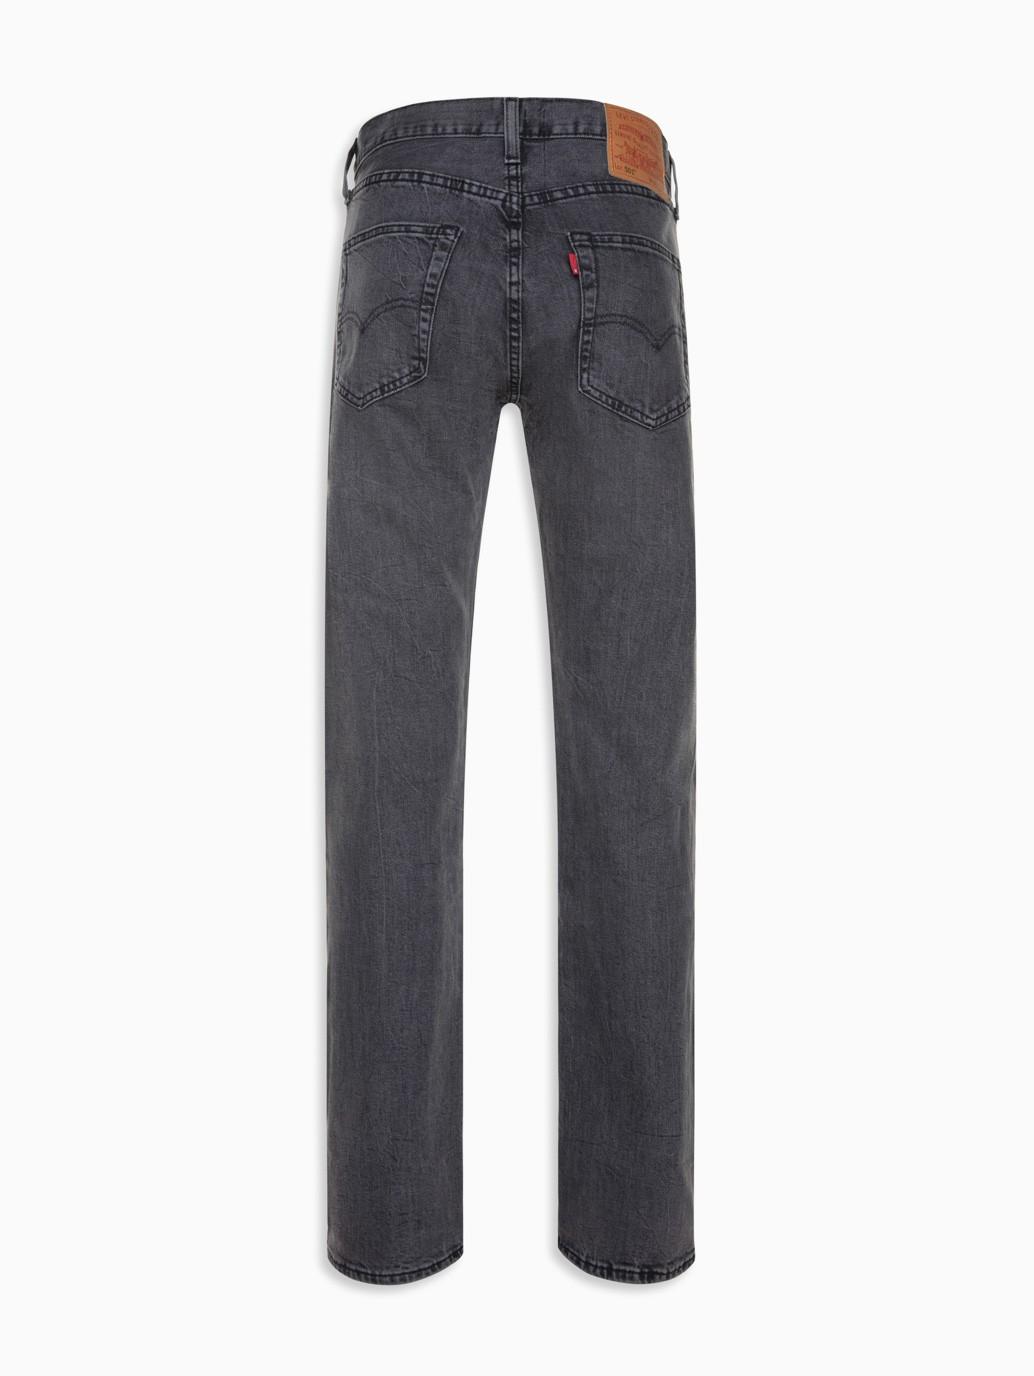 Buy Levi's® Men's 501® Original Jeans| Levi's® Official Online Store PH